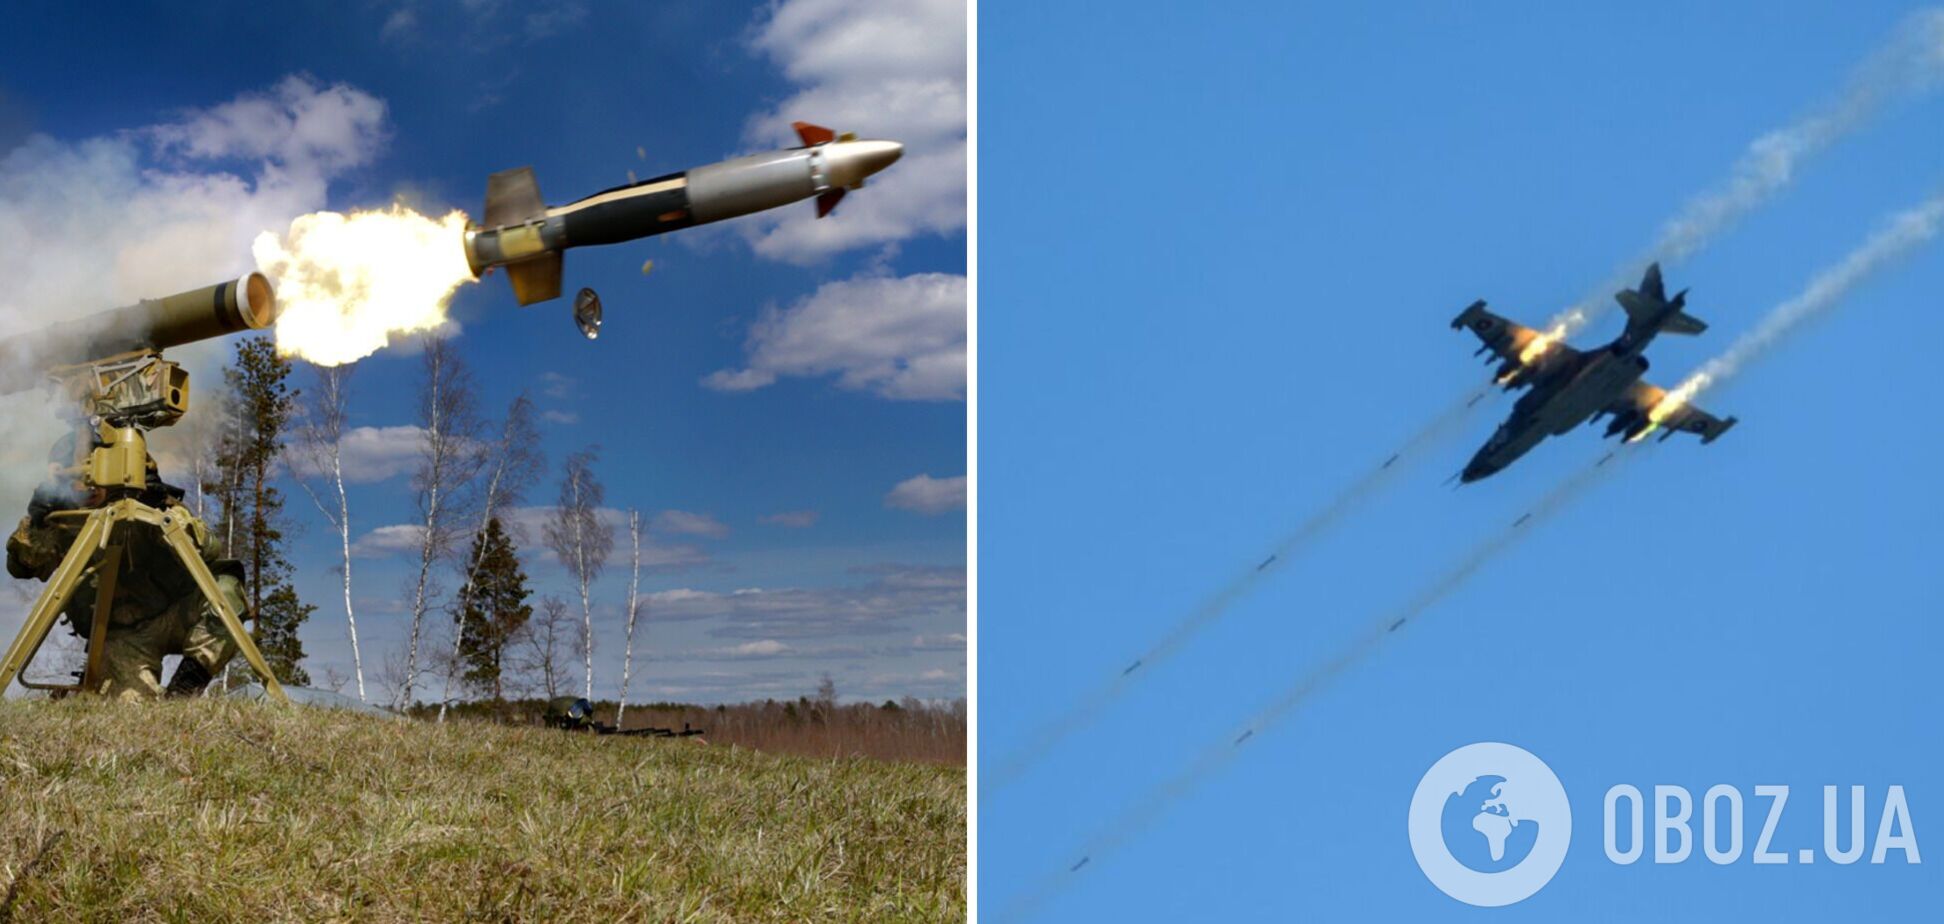 Російські окупанти скинули на Одещині касетну бомбу РБК-500, заборонену міжнародним законодавством